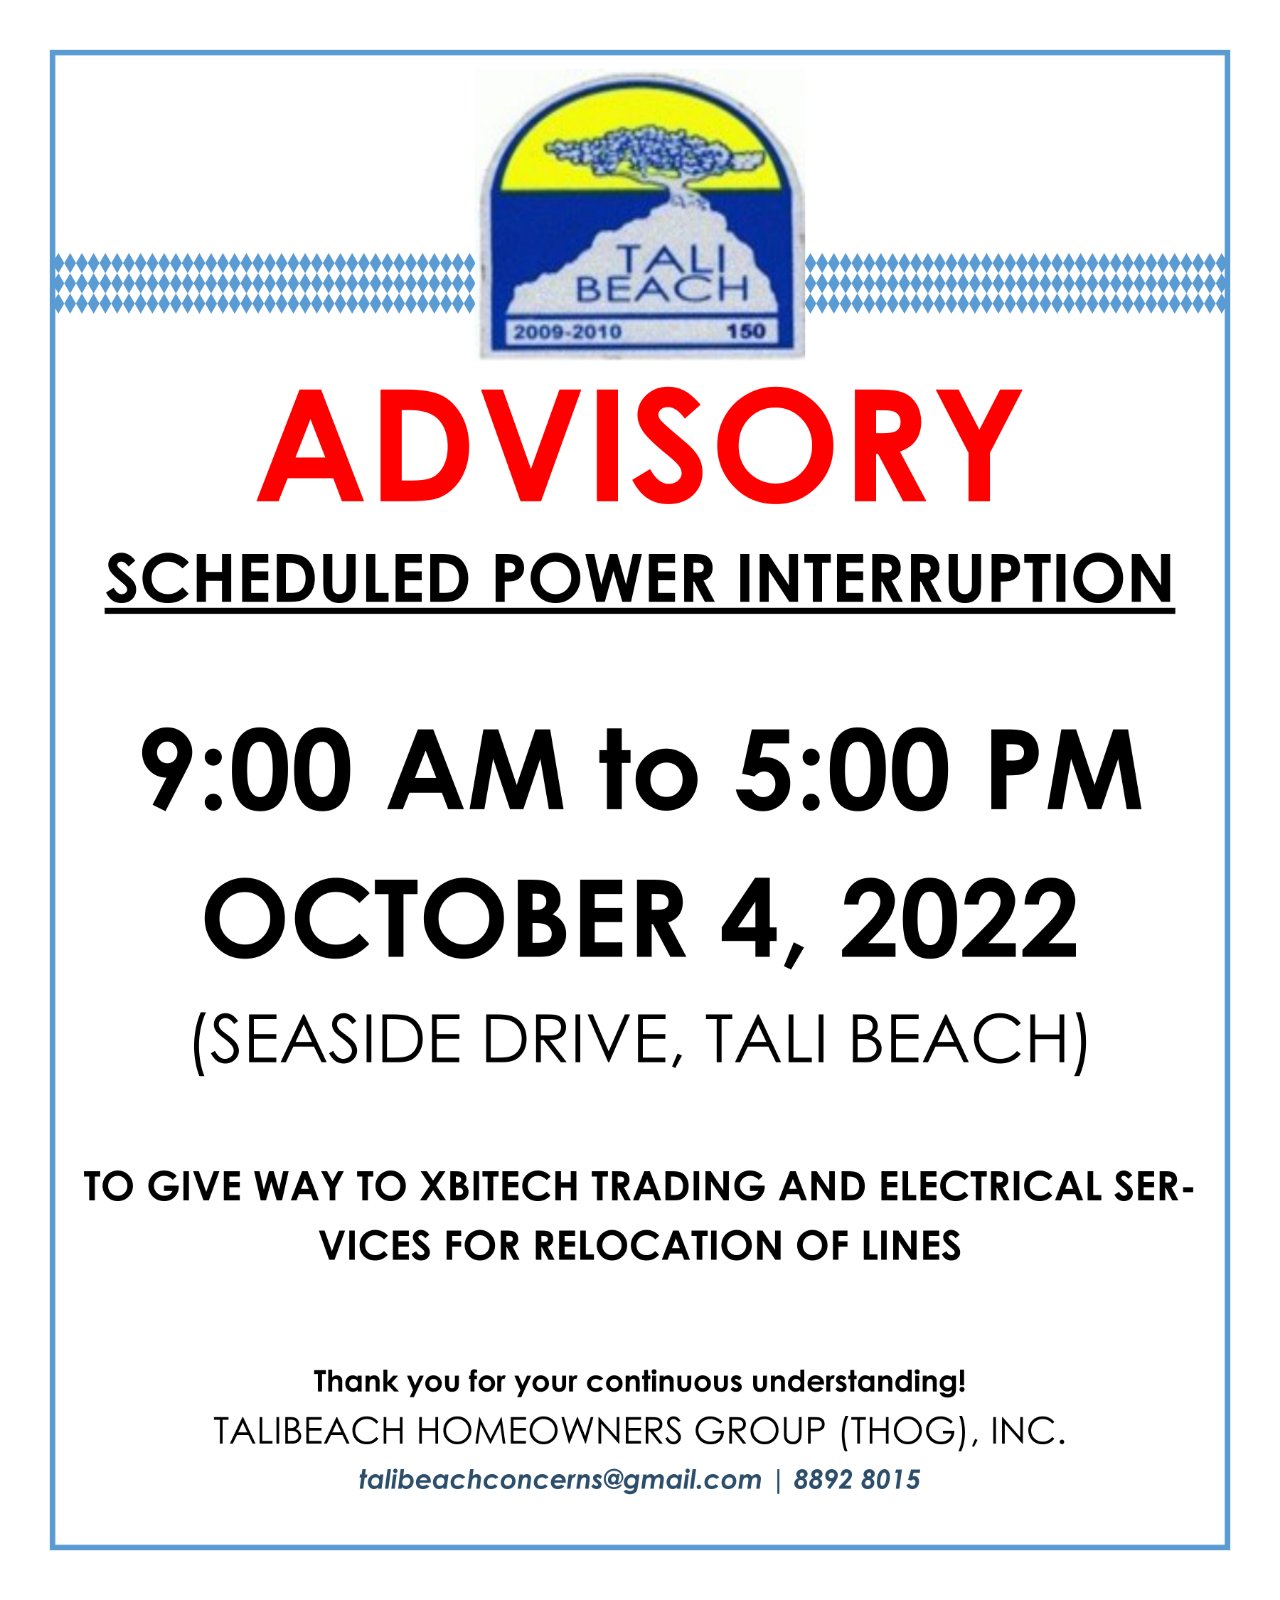 POWER INTERRUPTION: October 4, 2022